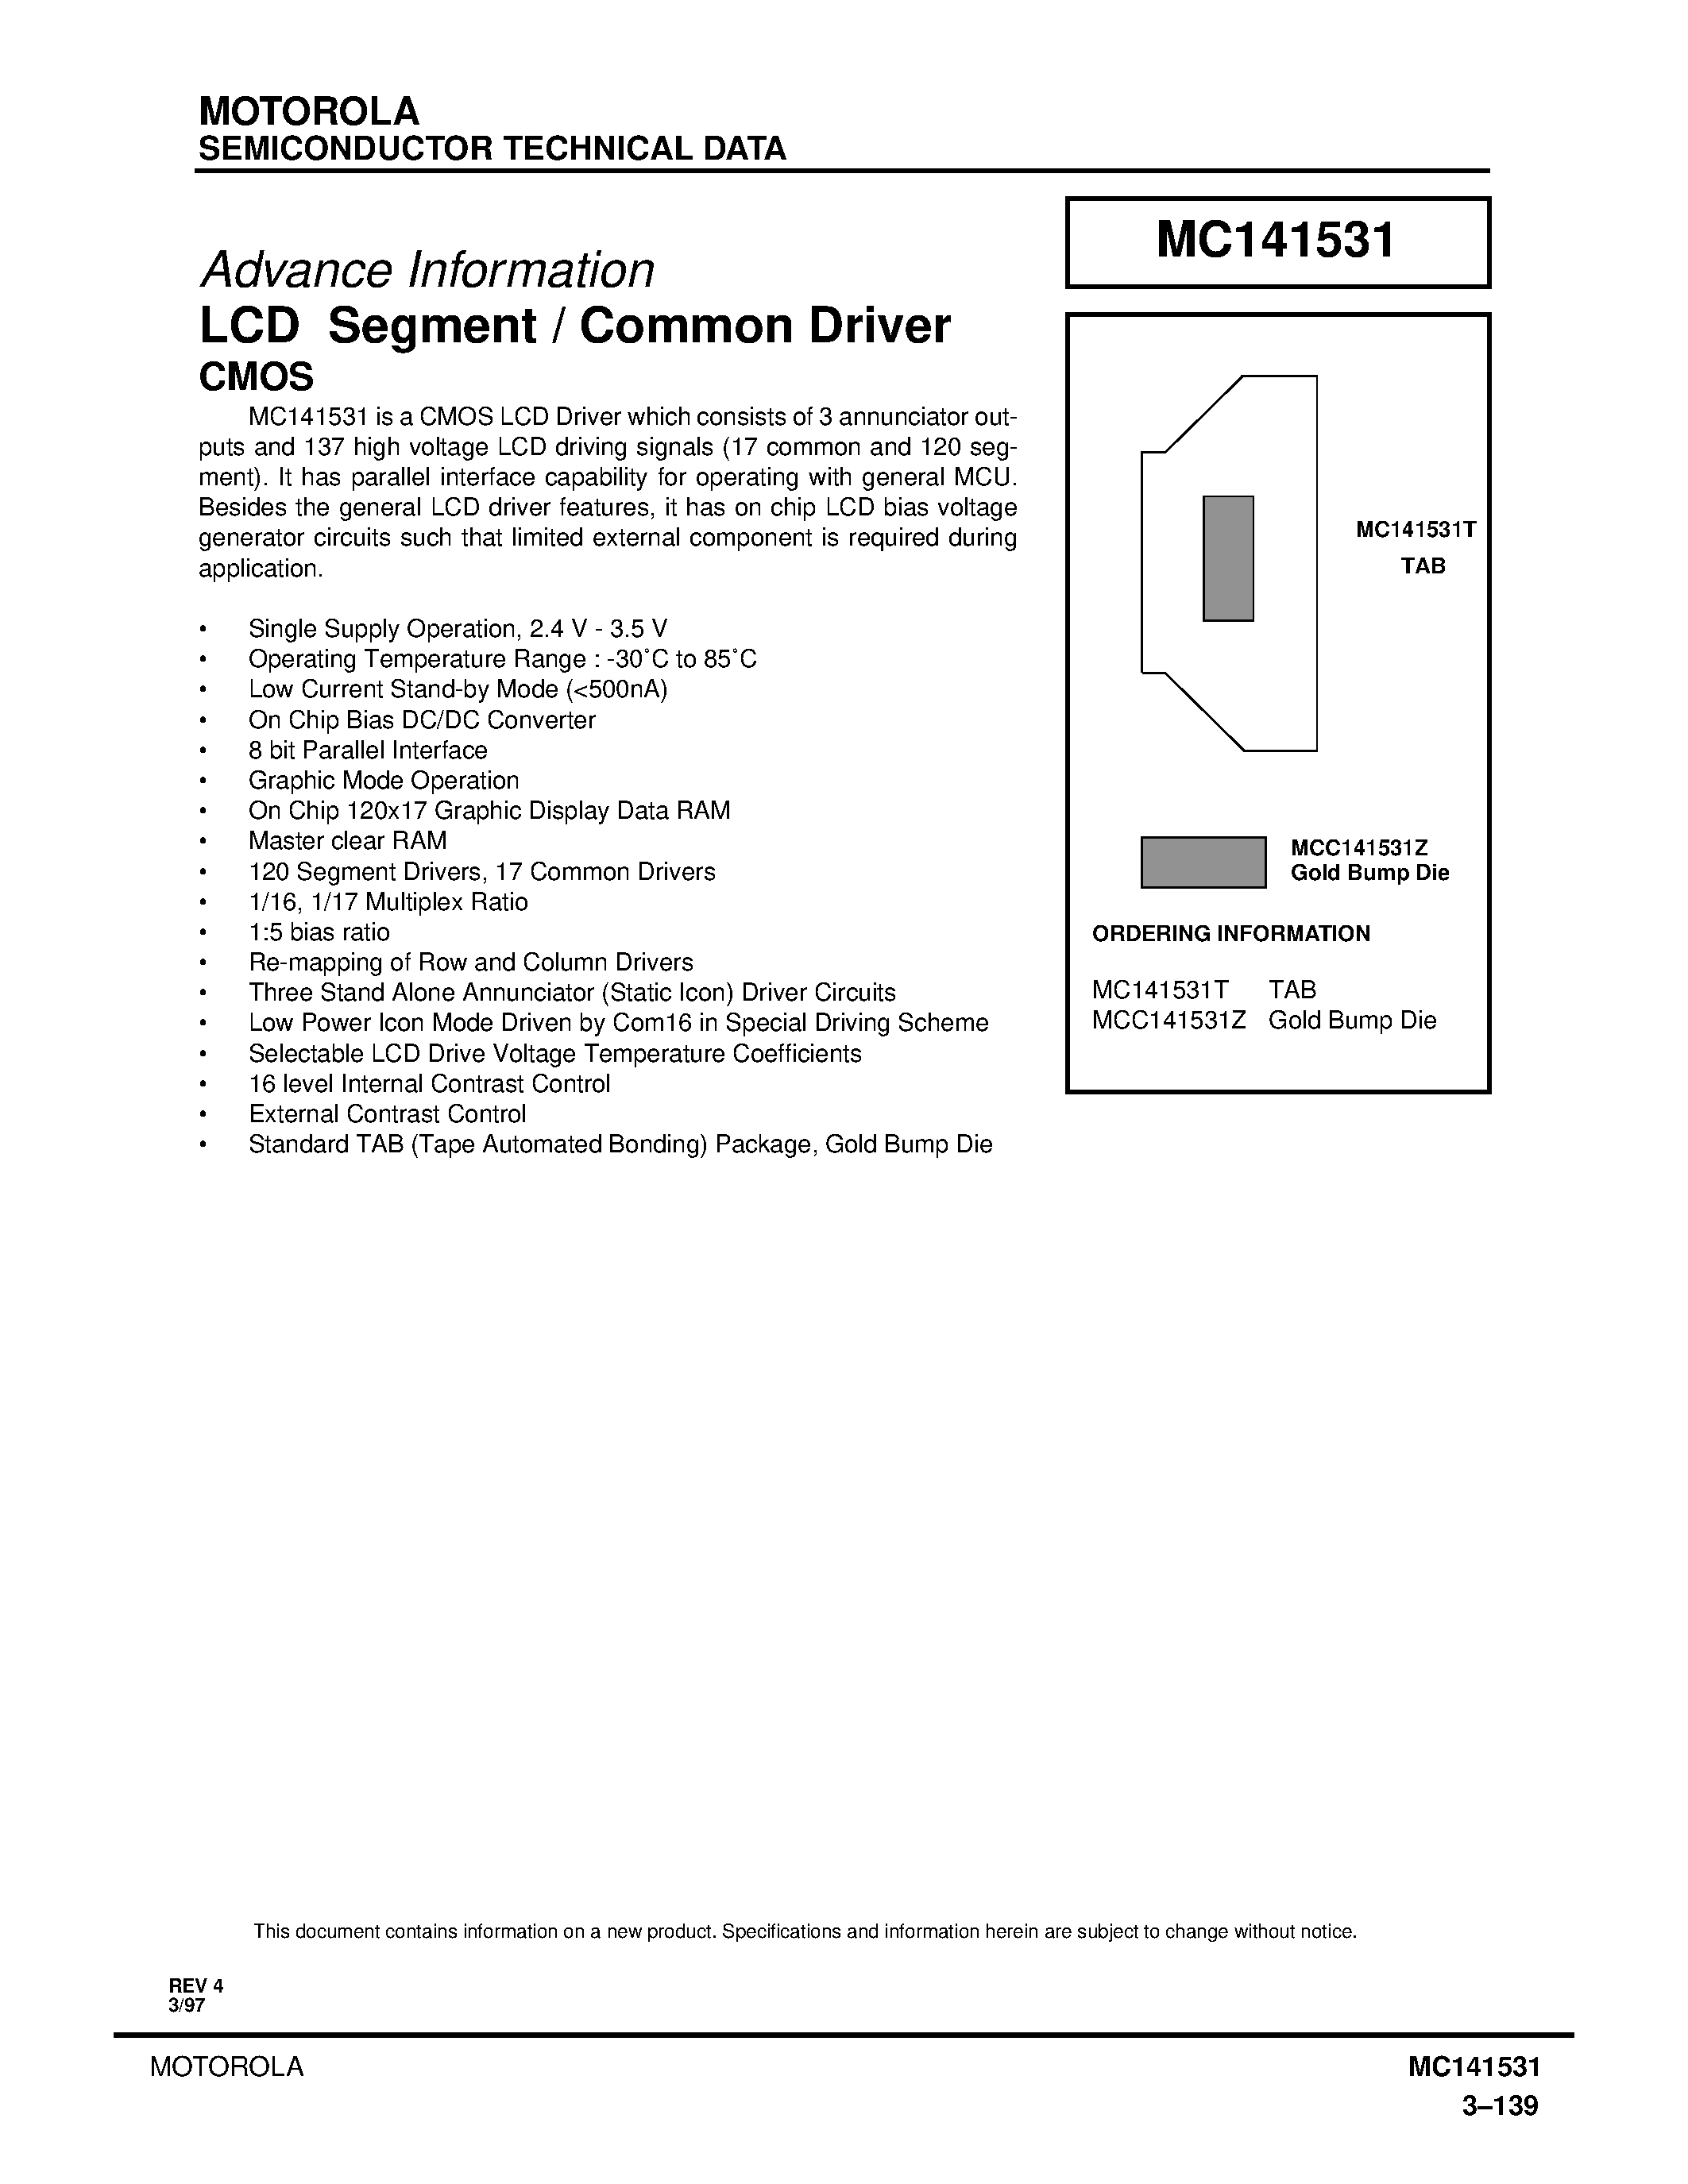 Даташит MC141531T - LCD Segment/Common Driver CMOS страница 1